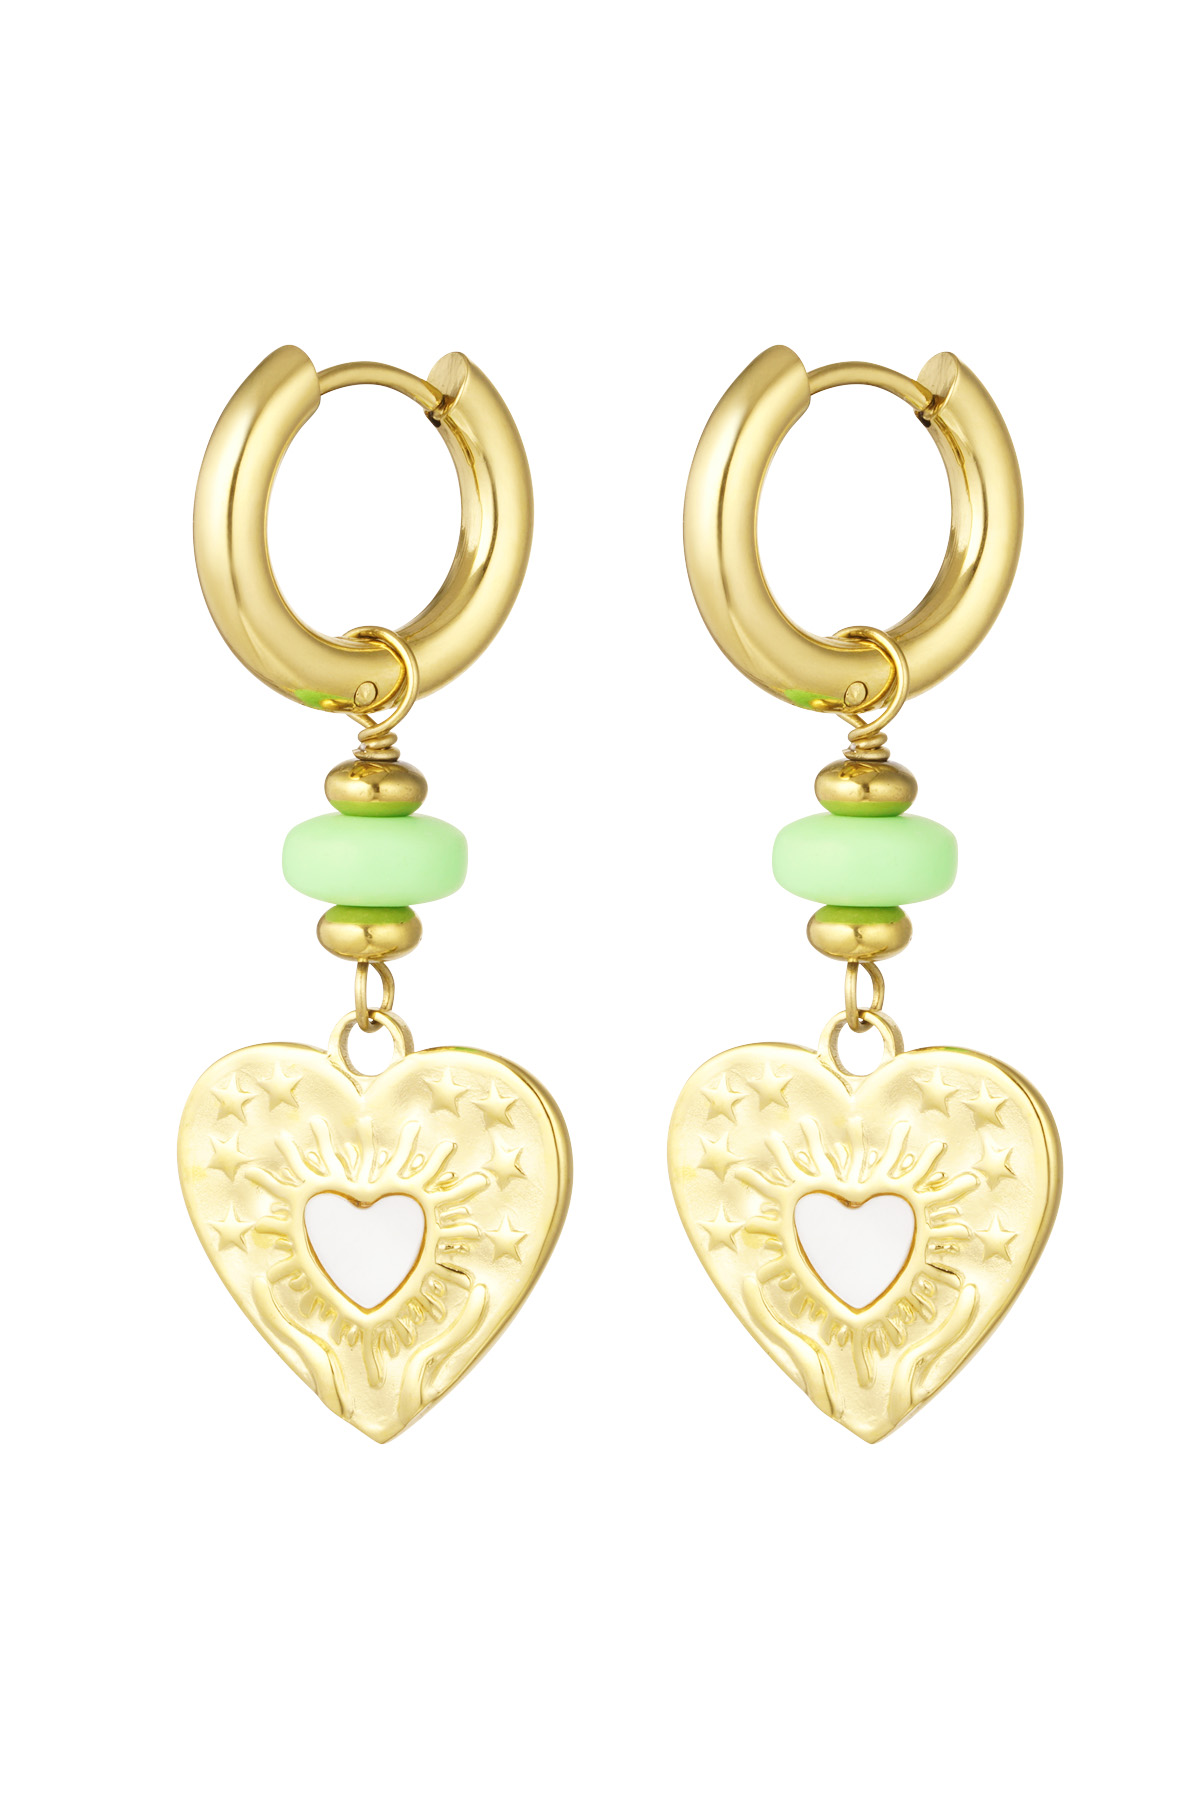 Orecchini cuore moneta con perlina verde - oro/verde h5 